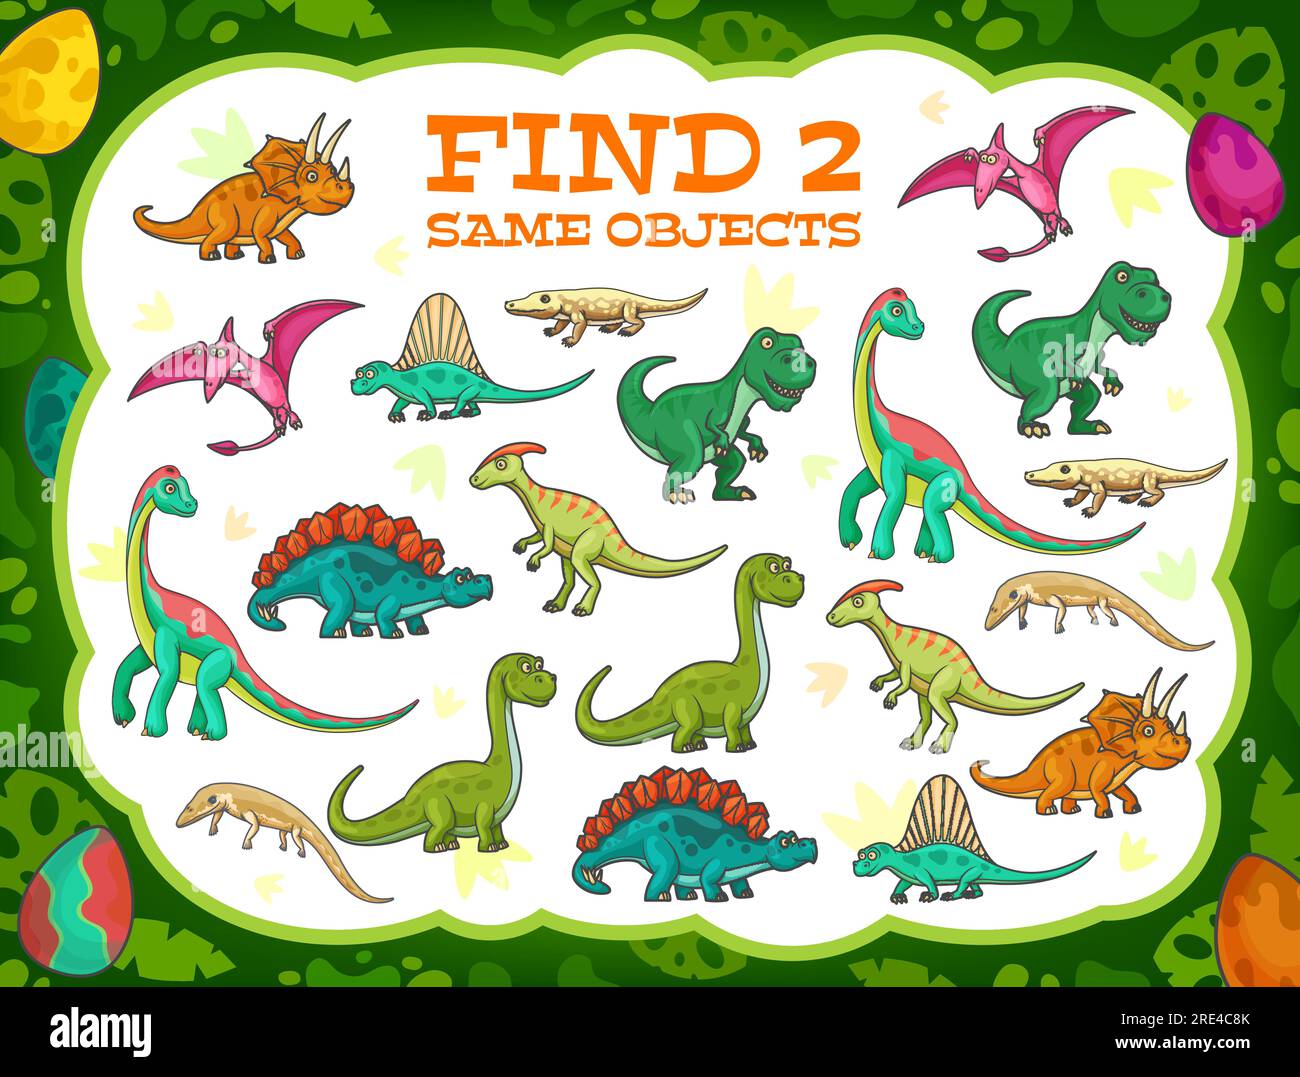 Im Dschungel finden Kinder zwei Dinosaurier, die denselben Cartoon spielen. Vektorspiel mit niedlichen Reptilien und Dino-Figuren. Pädagogische Kinder rätseln sich mit lustigen prähistorischen Eidechsen, Baby-Puzzle, Freizeitbeschäftigung Stock Vektor